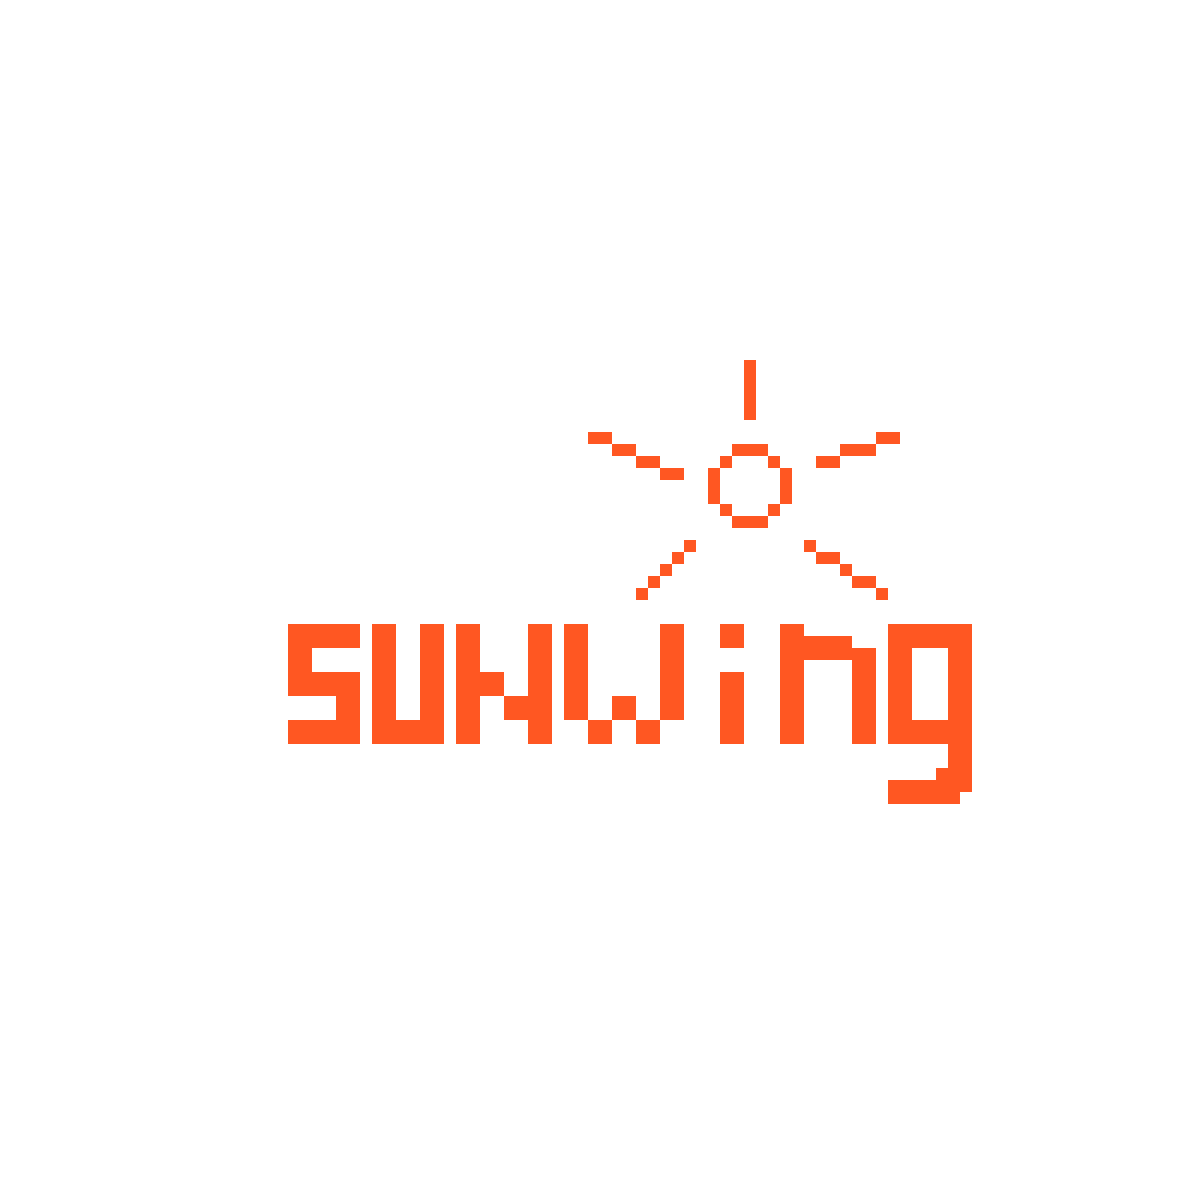 Sunwing Logo - Pixilart - sunwing logo by Efositix-drawin